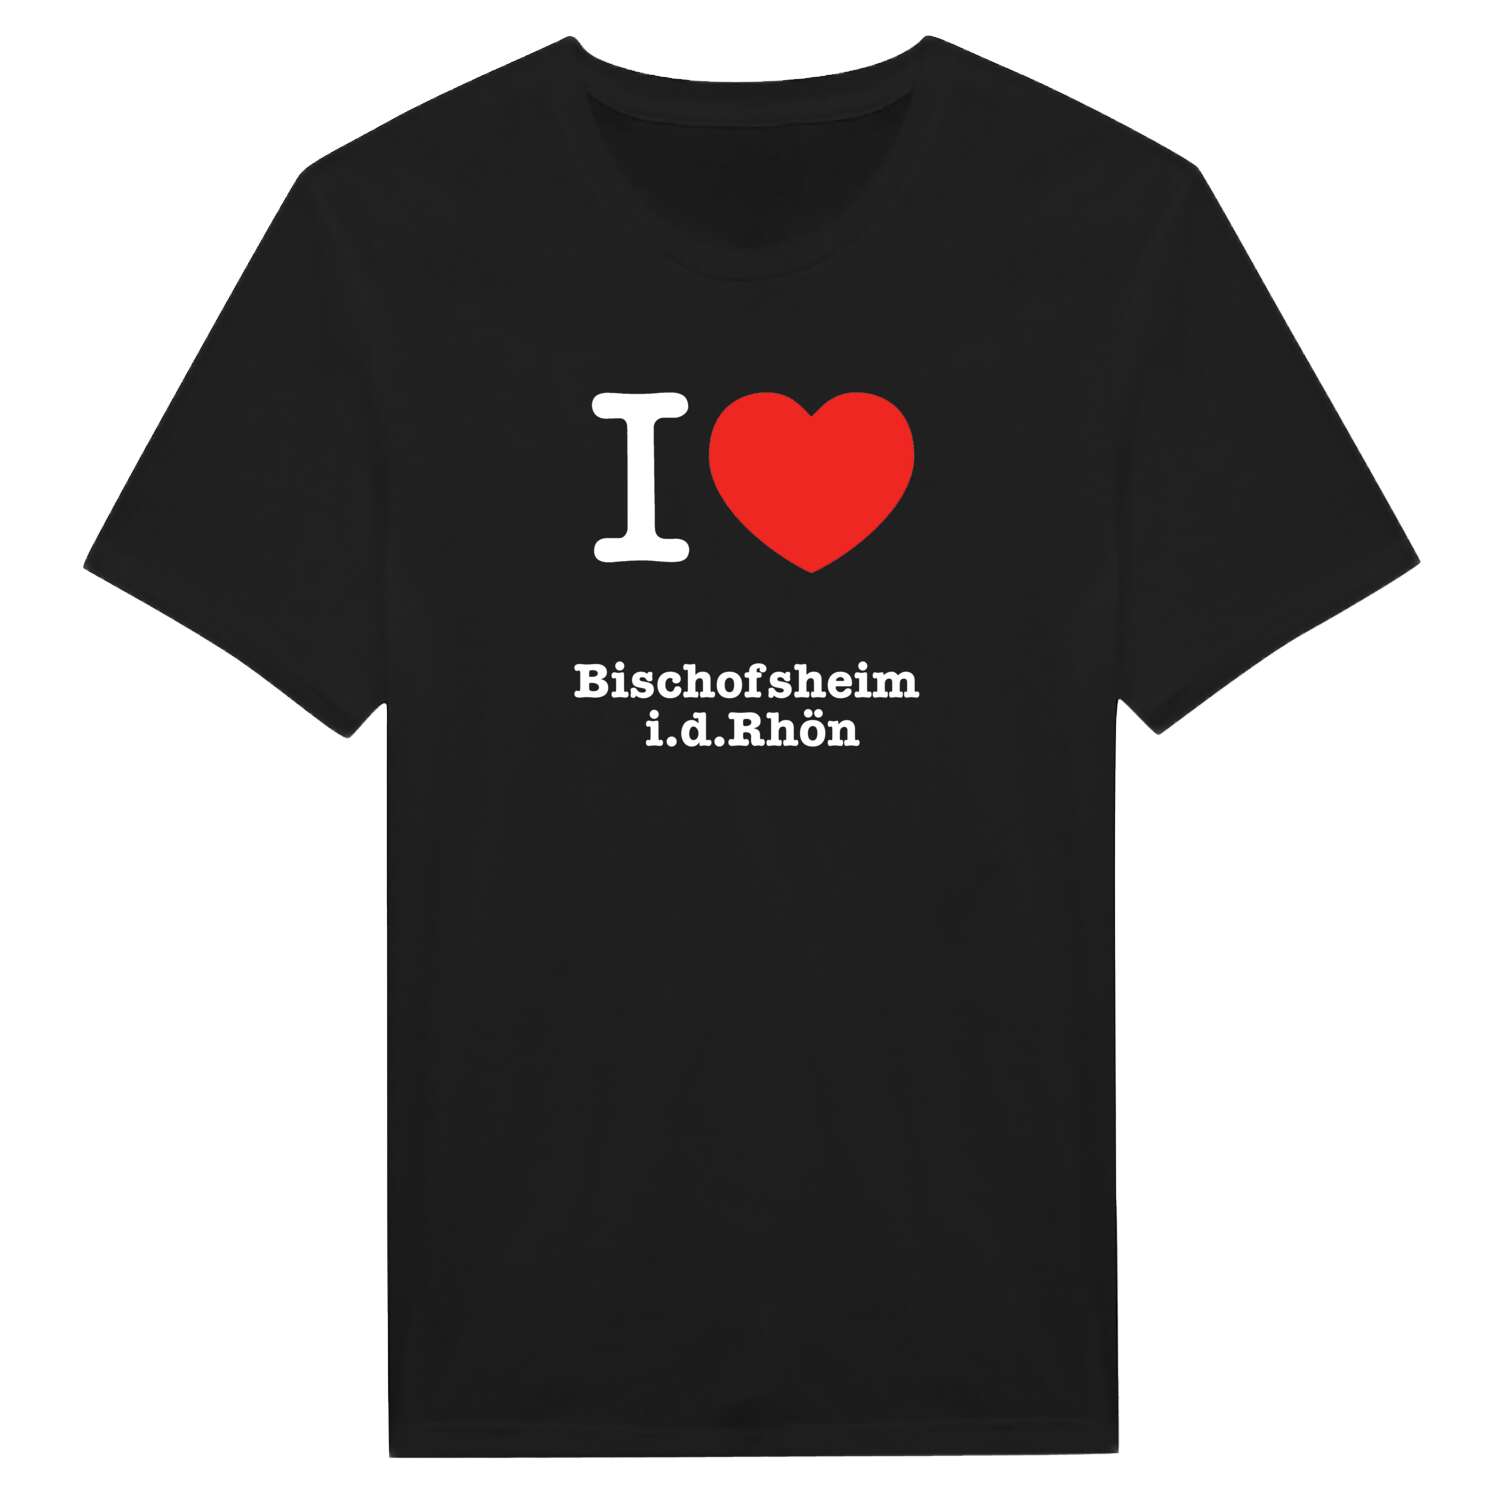 Bischofsheim i.d.Rhön T-Shirt »I love«